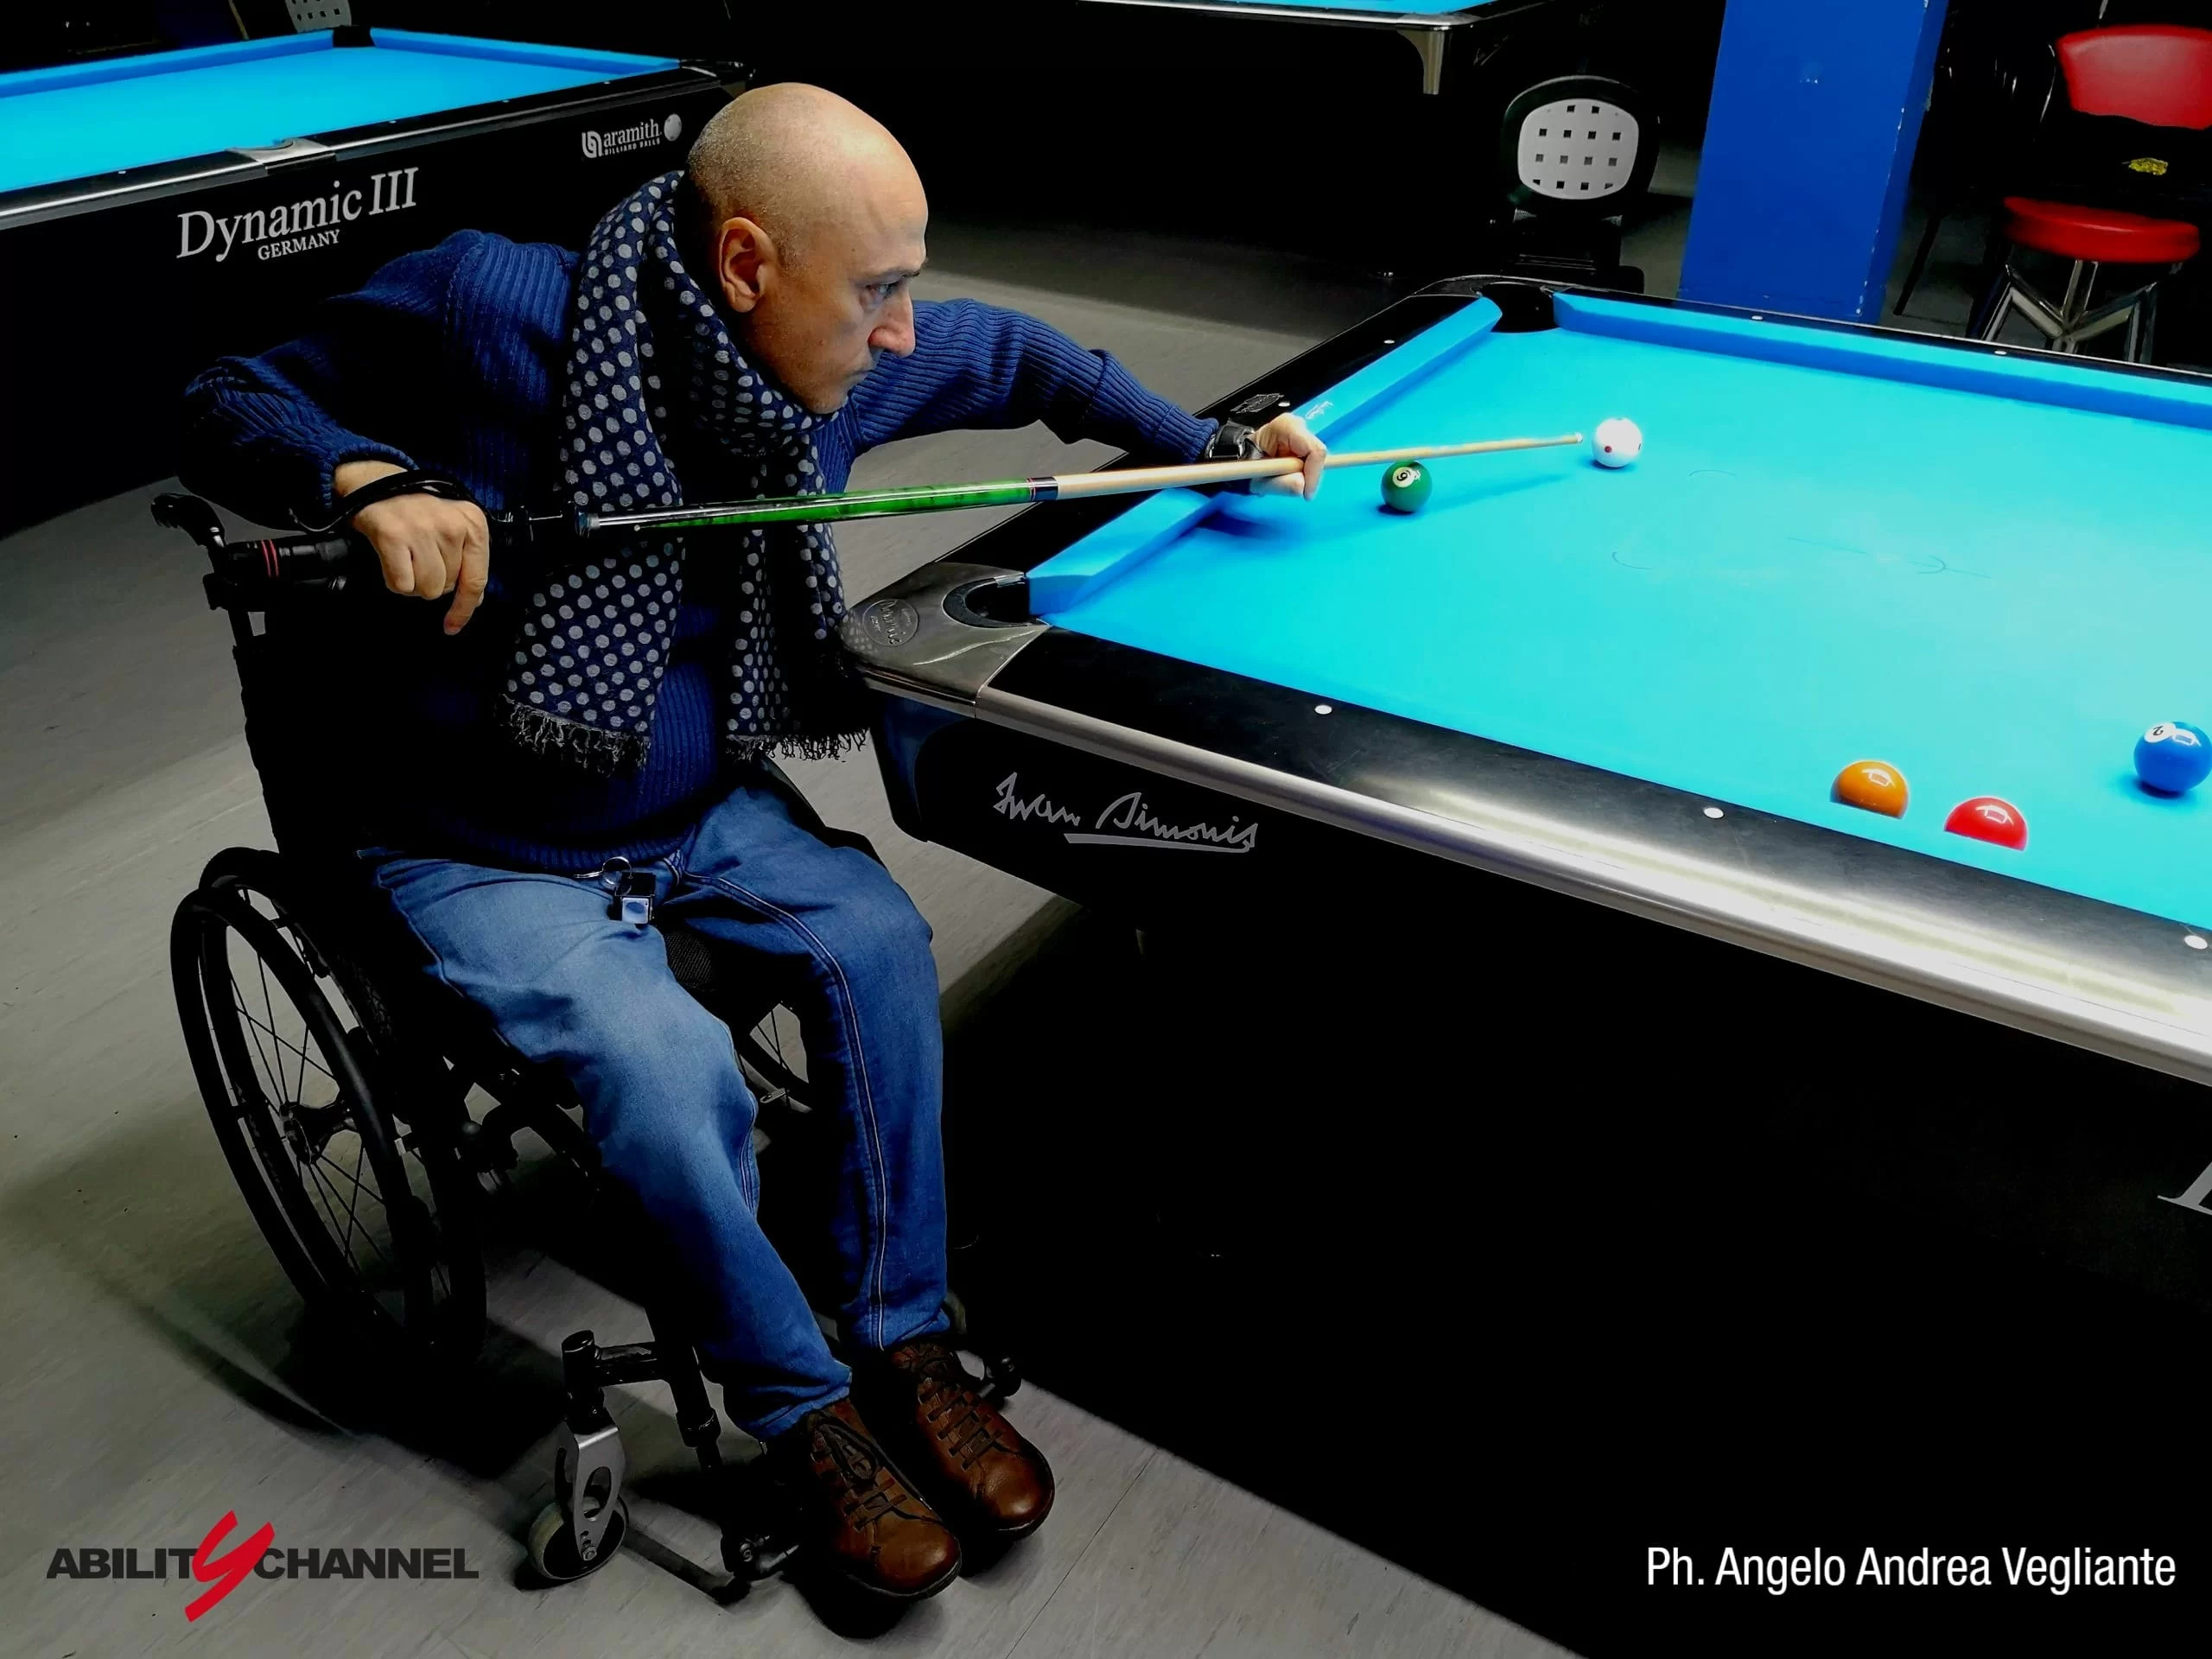 Wheelchair Billiards Ability Channel Luca Bucchi biliardino in carrozzina